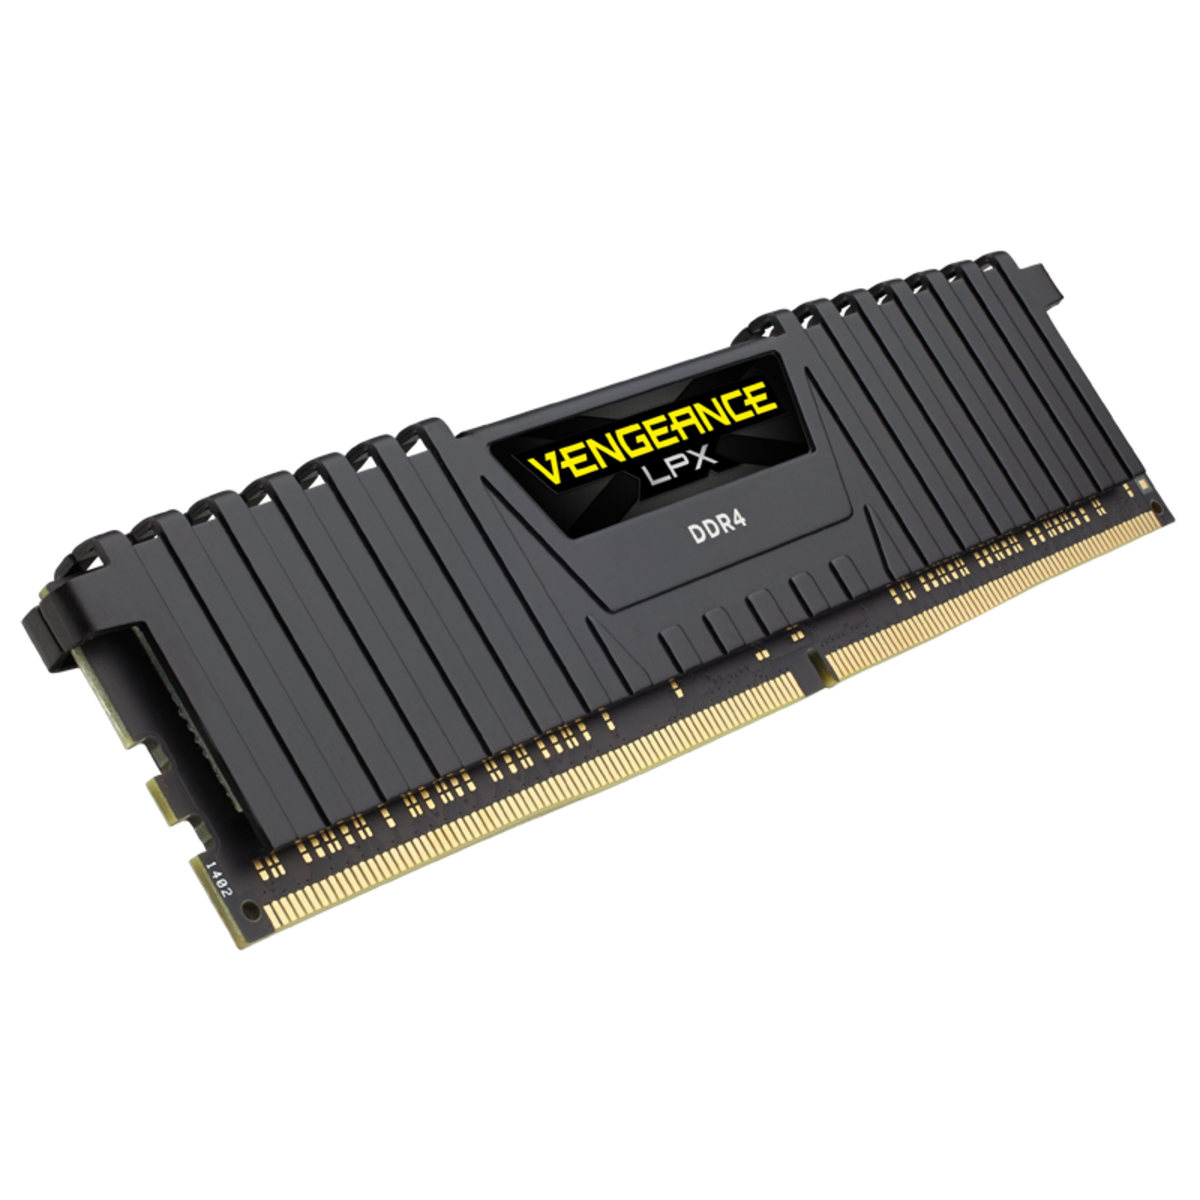 CORSAIR Vengeance LPX 8GB DDR4 3200MHz Desktop Memory Stick